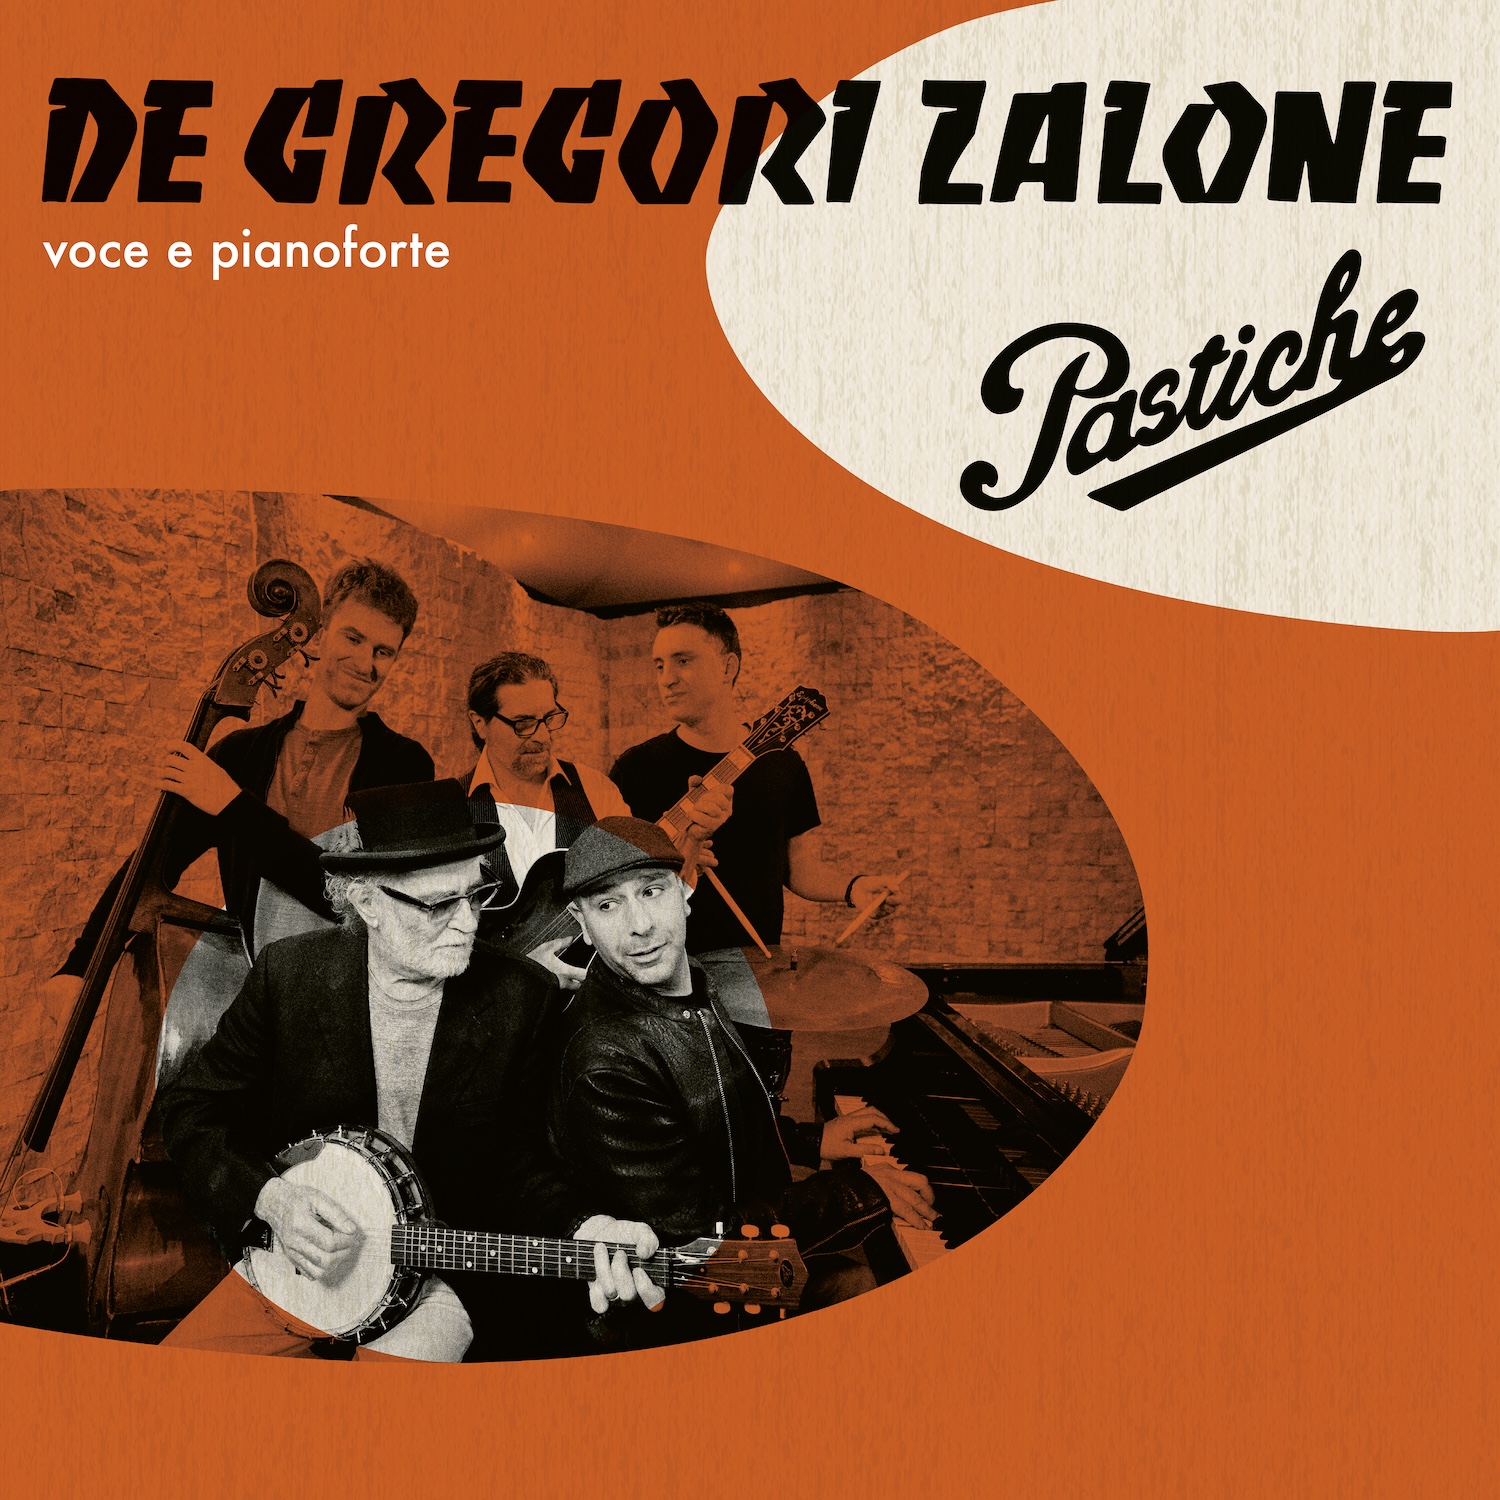 Checco Zalone e De Gregori, strana coppia con l'album Pastiche